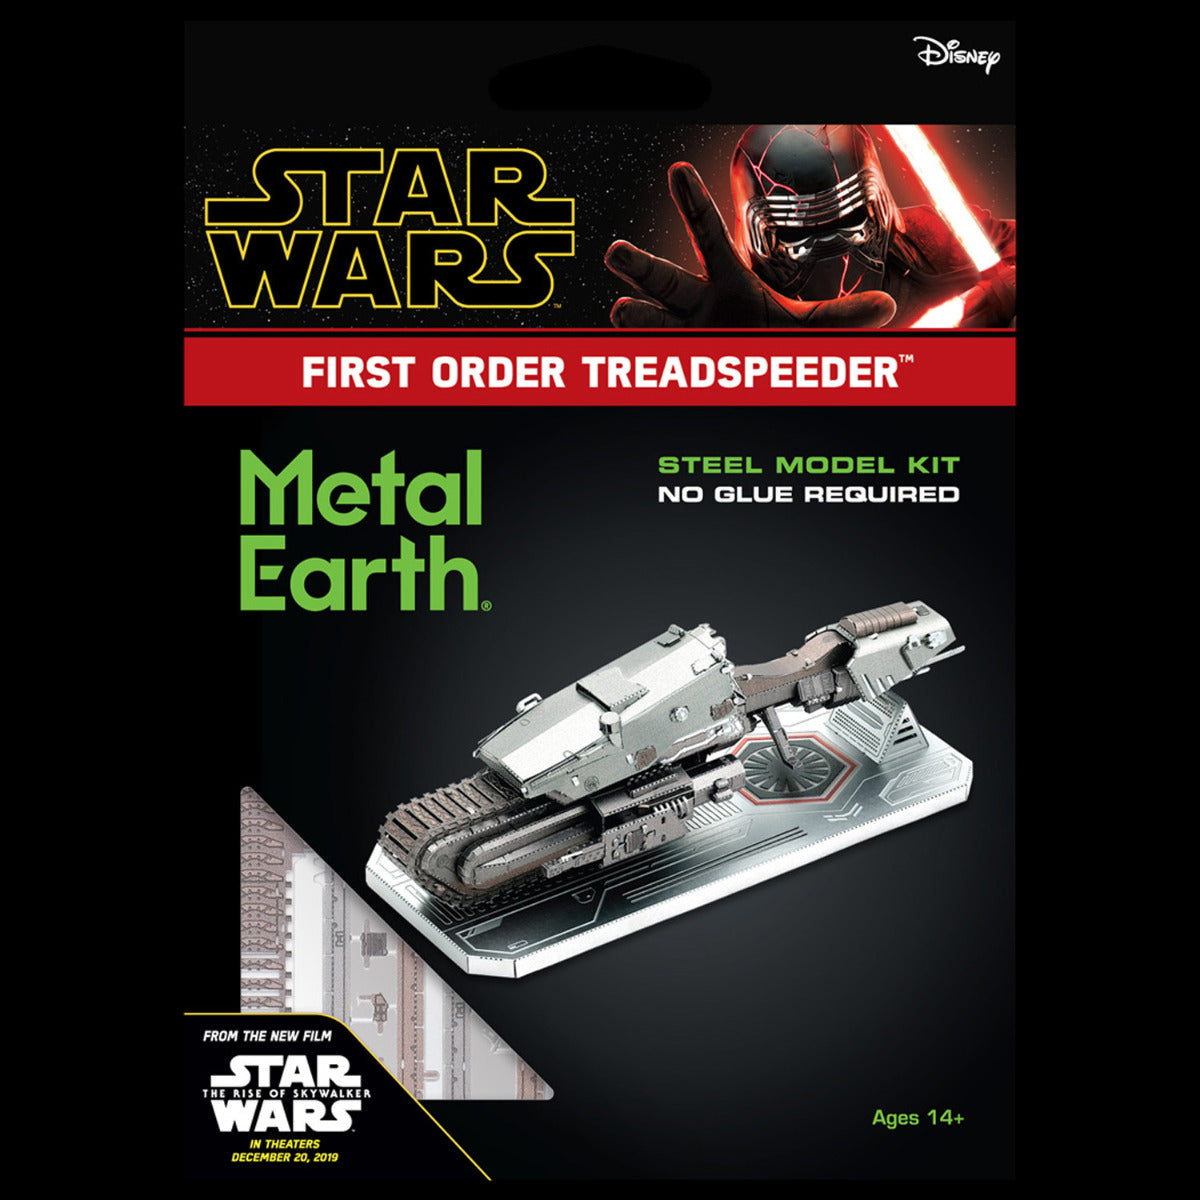 Metal Earth Metallbausätze MMS418 Star Wars “Der Aufstieg Skywalkers” First Order Treadspeeder Metall Modell